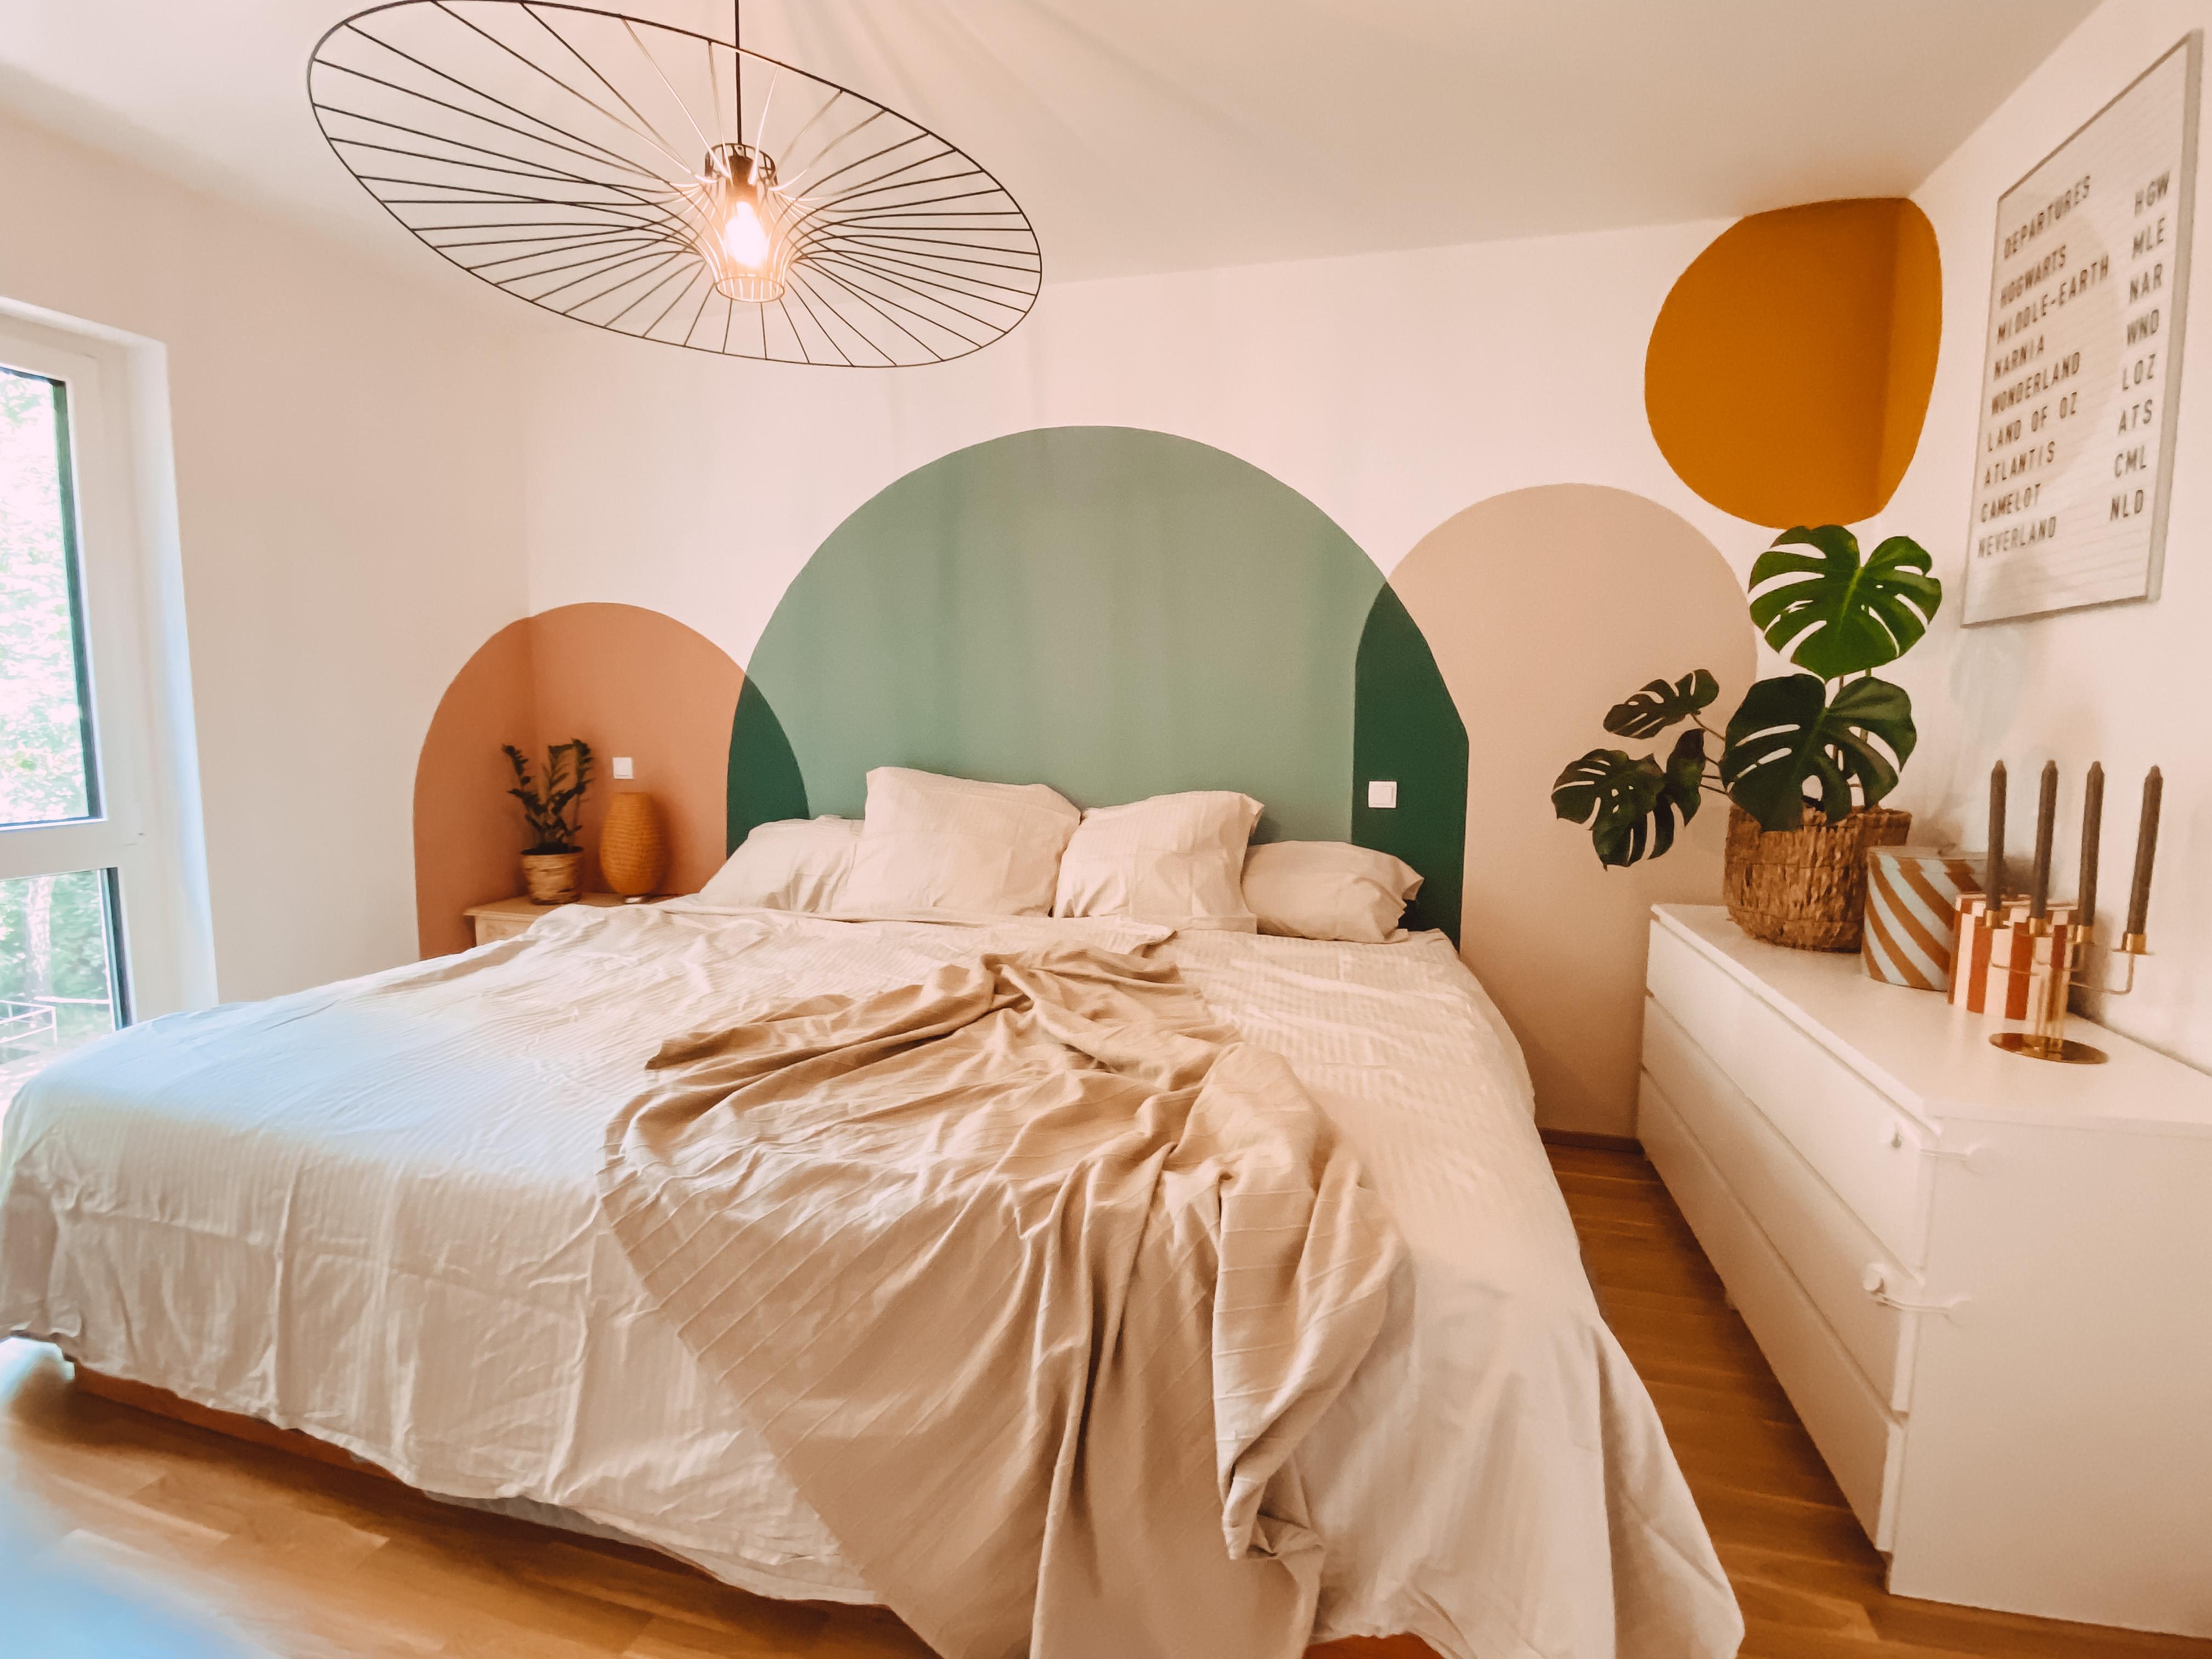 Ich liebe den Stilbruch unserer eleganten Deckenleuchte und den modernen Wandfarben. #schlafzimmer #modernbohemian